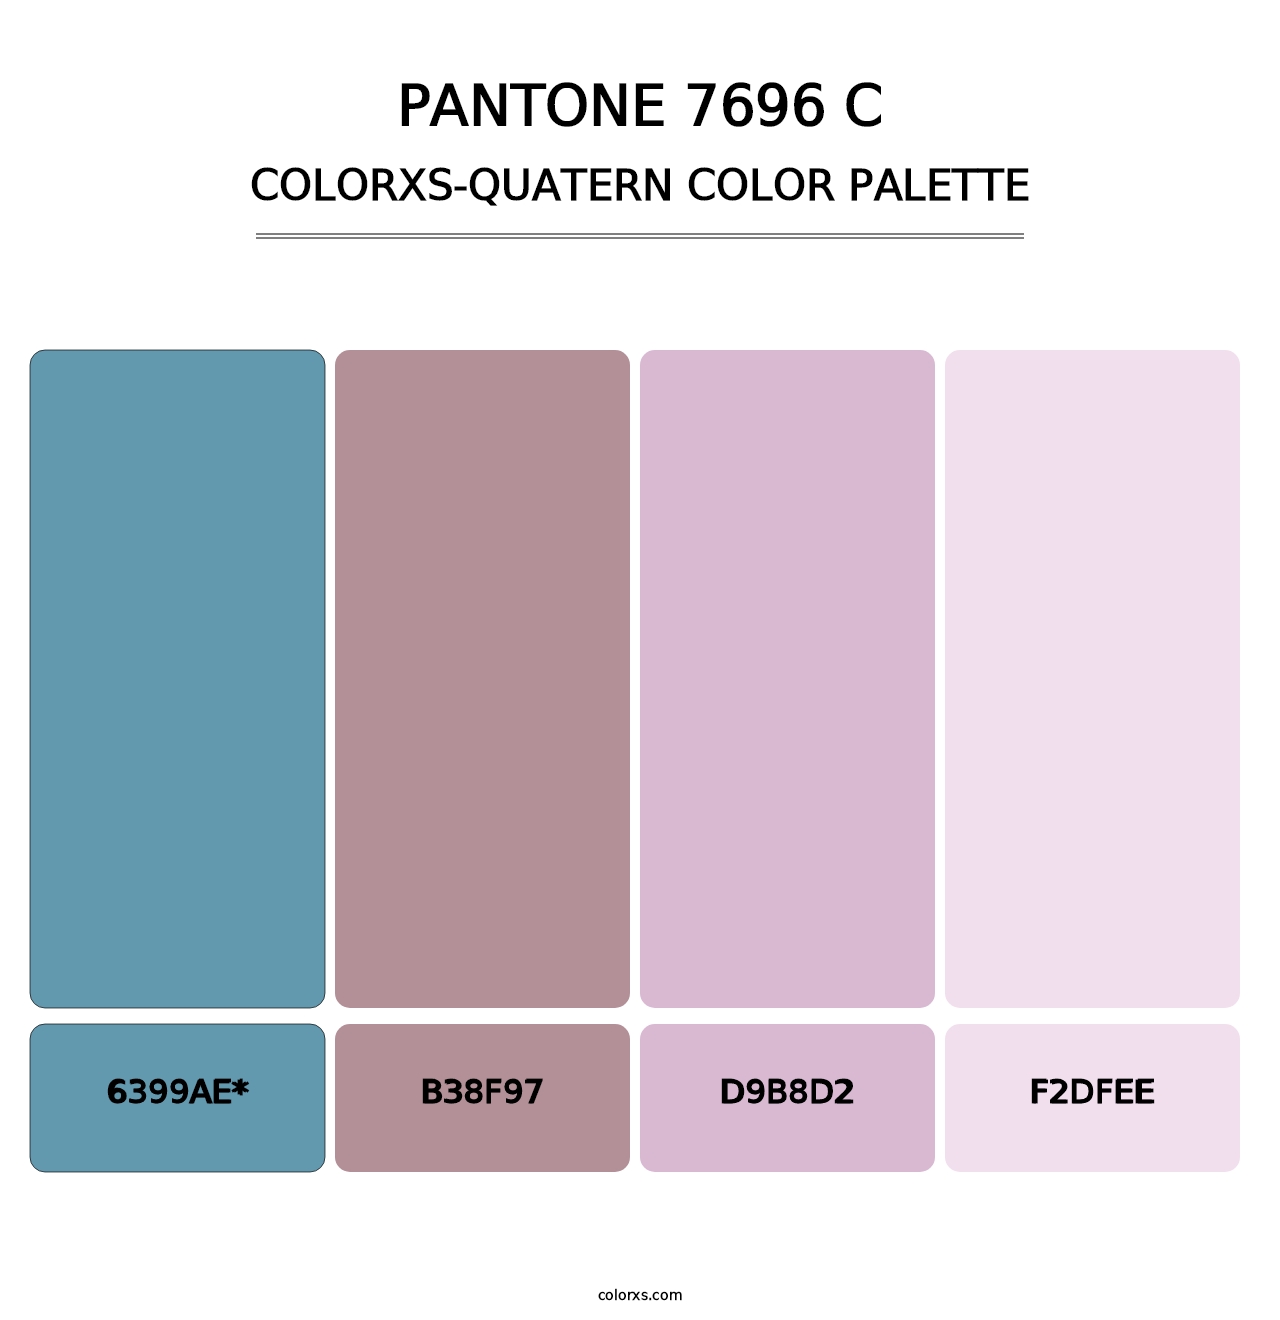 PANTONE 7696 C - Colorxs Quatern Palette